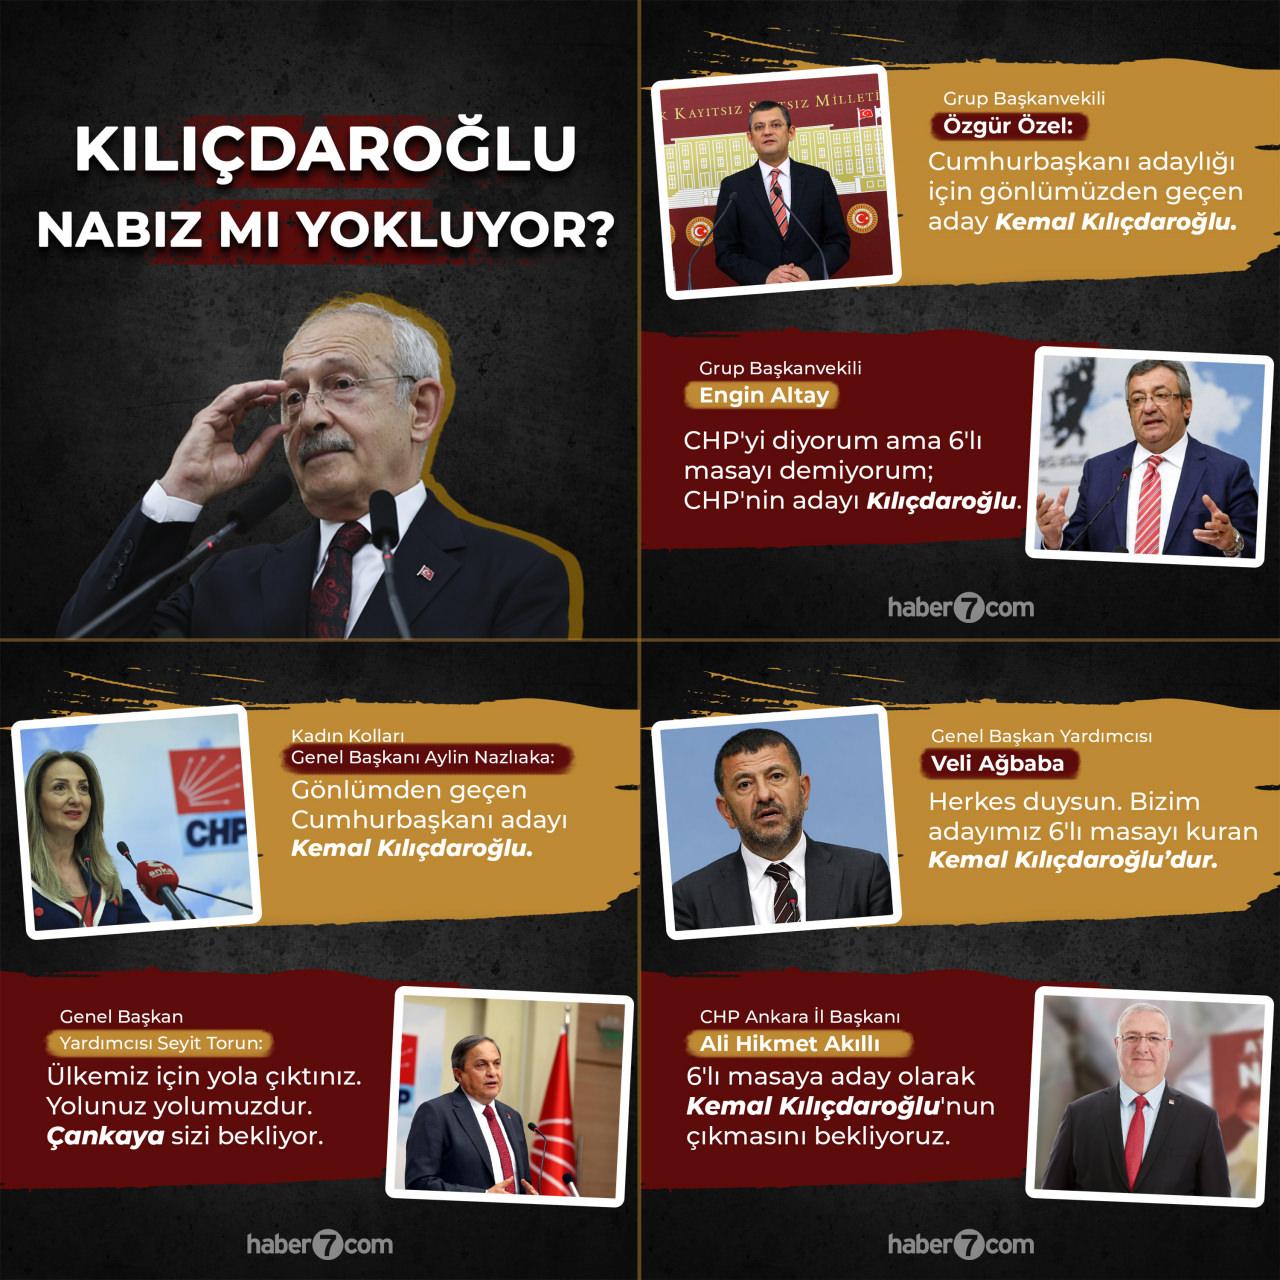 Kılıçdaroğlu'nun kurmayları CHP liderinin adaylığını destekleyen açıklamalar yapıyor.